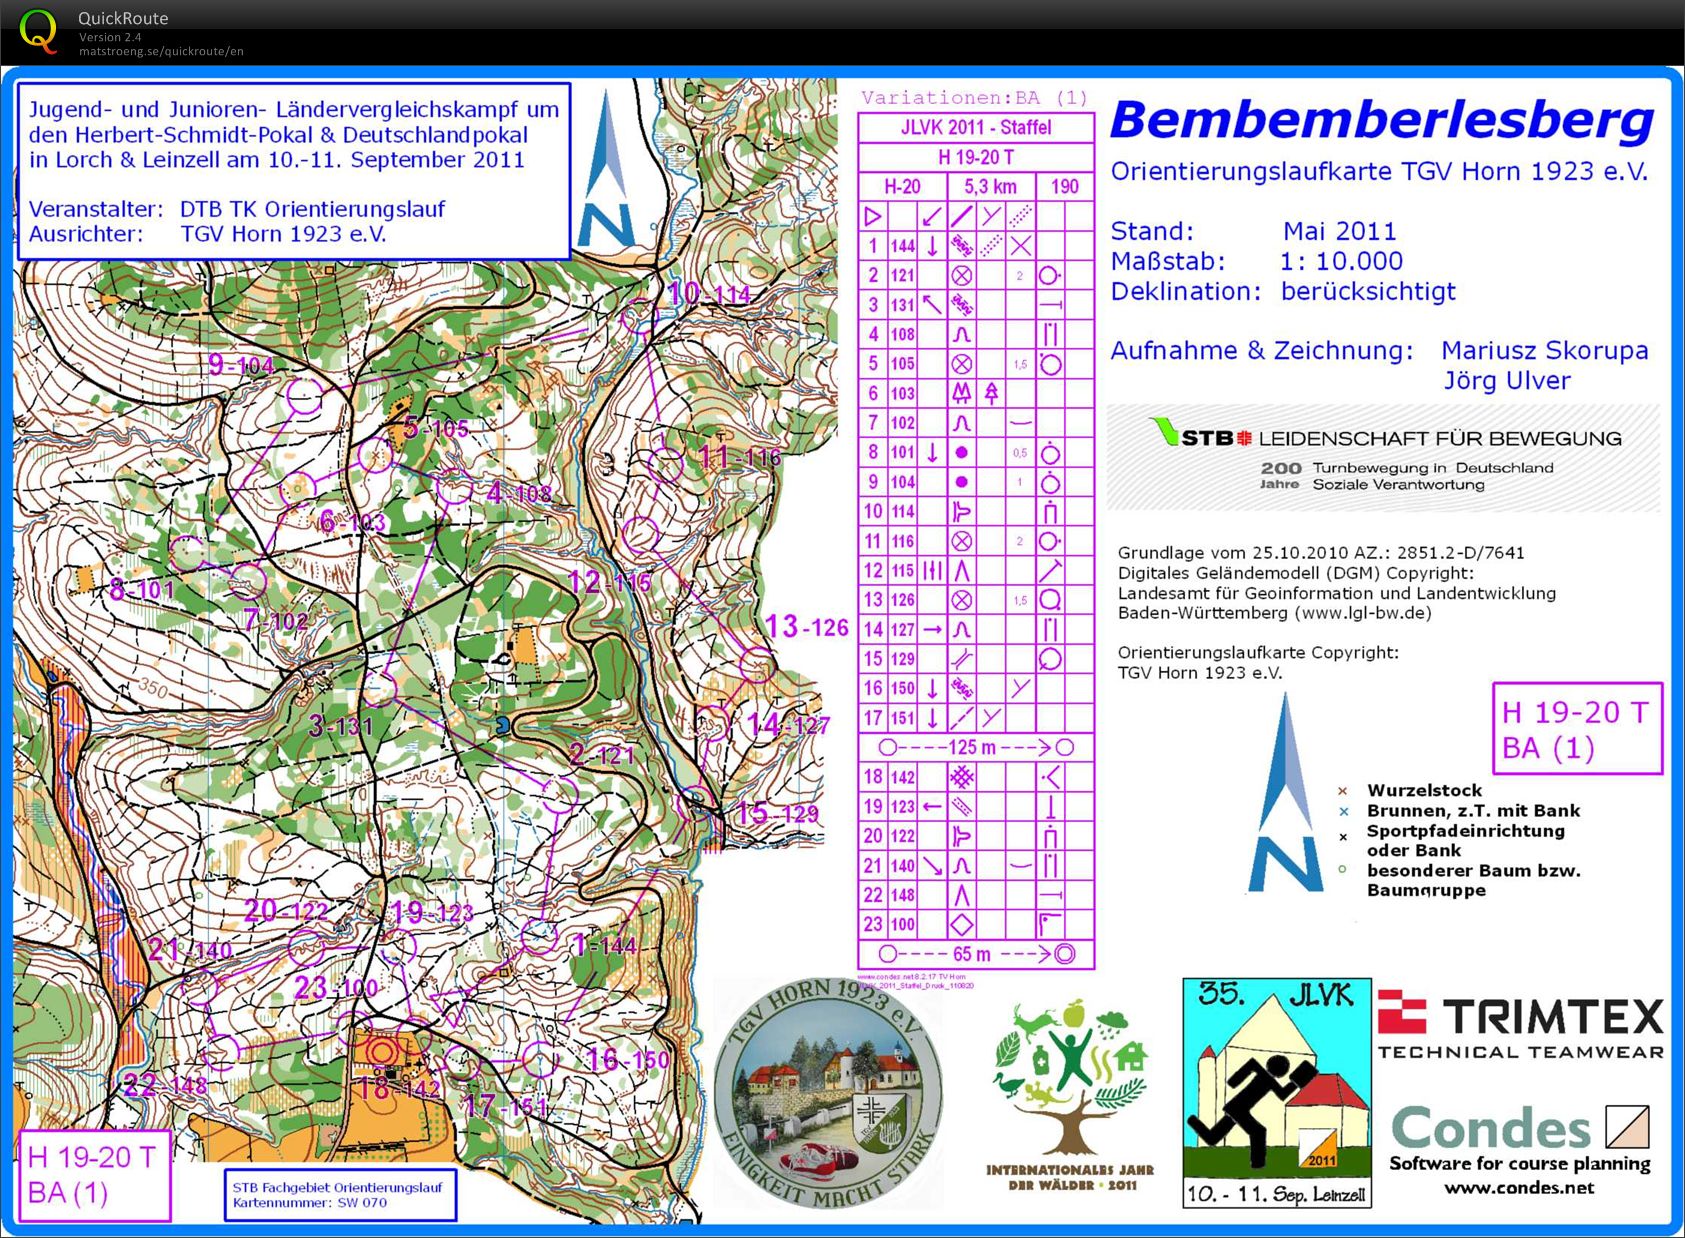 Training Bemberlesberg (2011 JLVK-Relay) (2012-04-01)